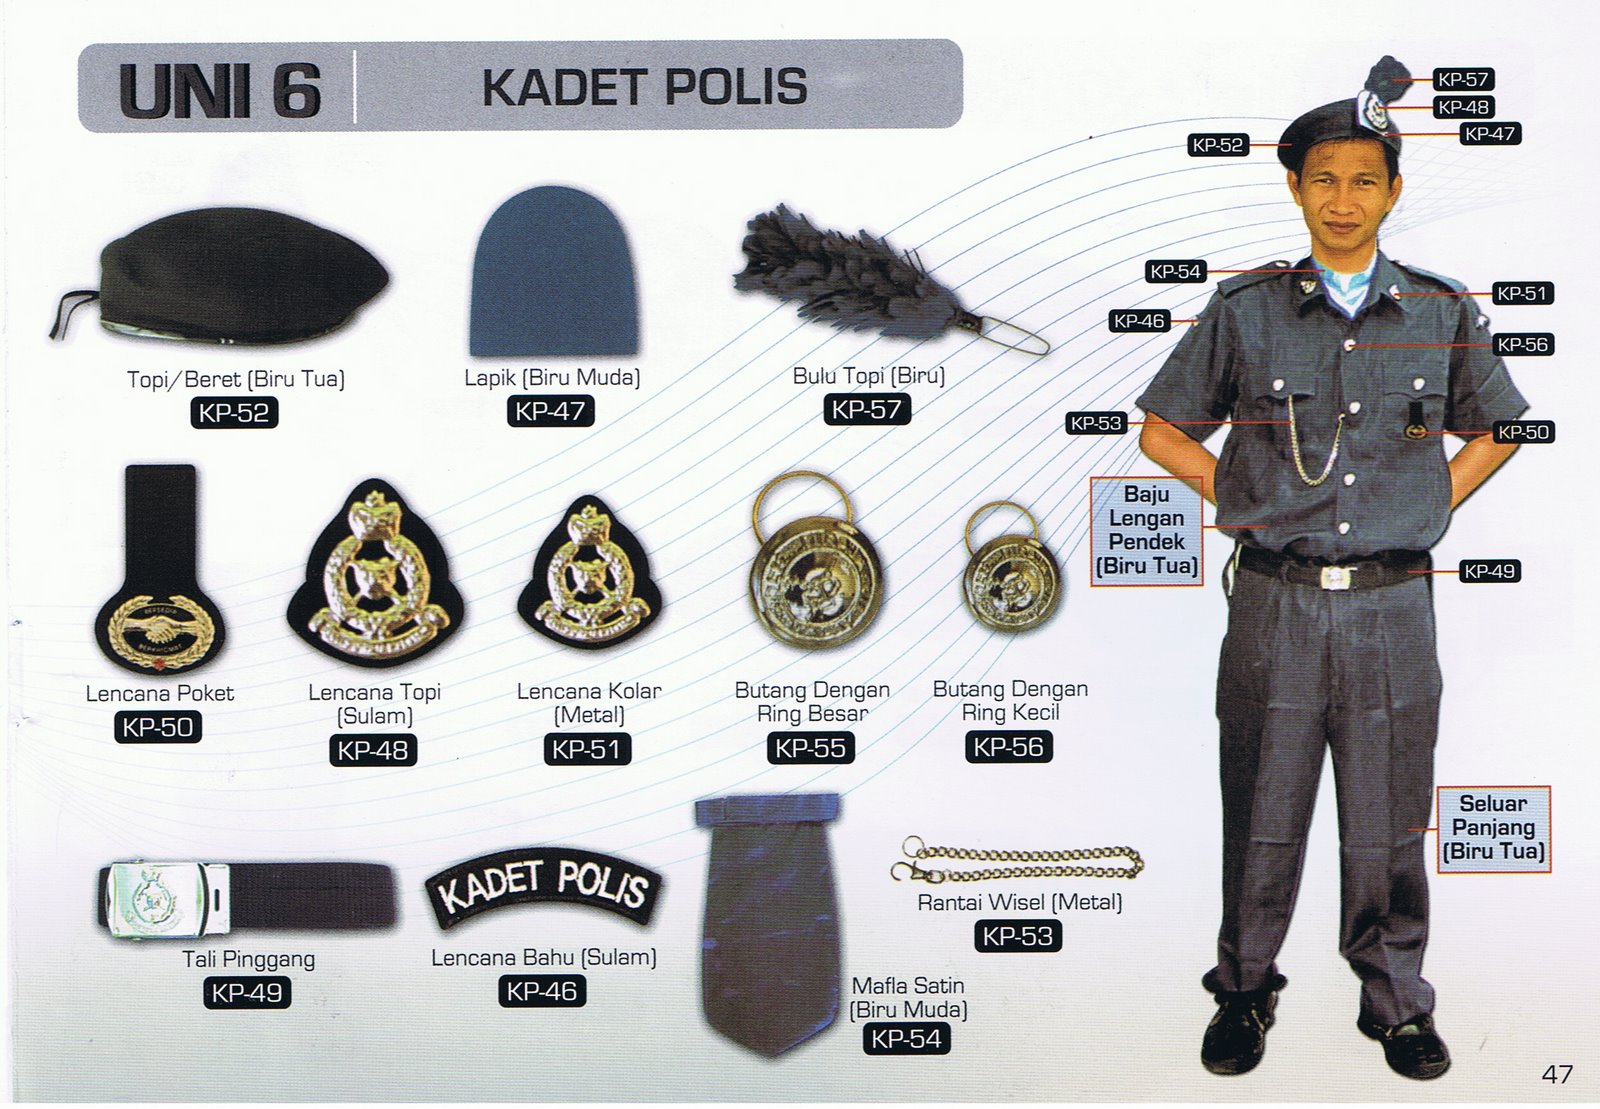 Kor Kadet Polis SMK Taman Daya 3: Kelengkapan Anggota Uniform Kadet Polis